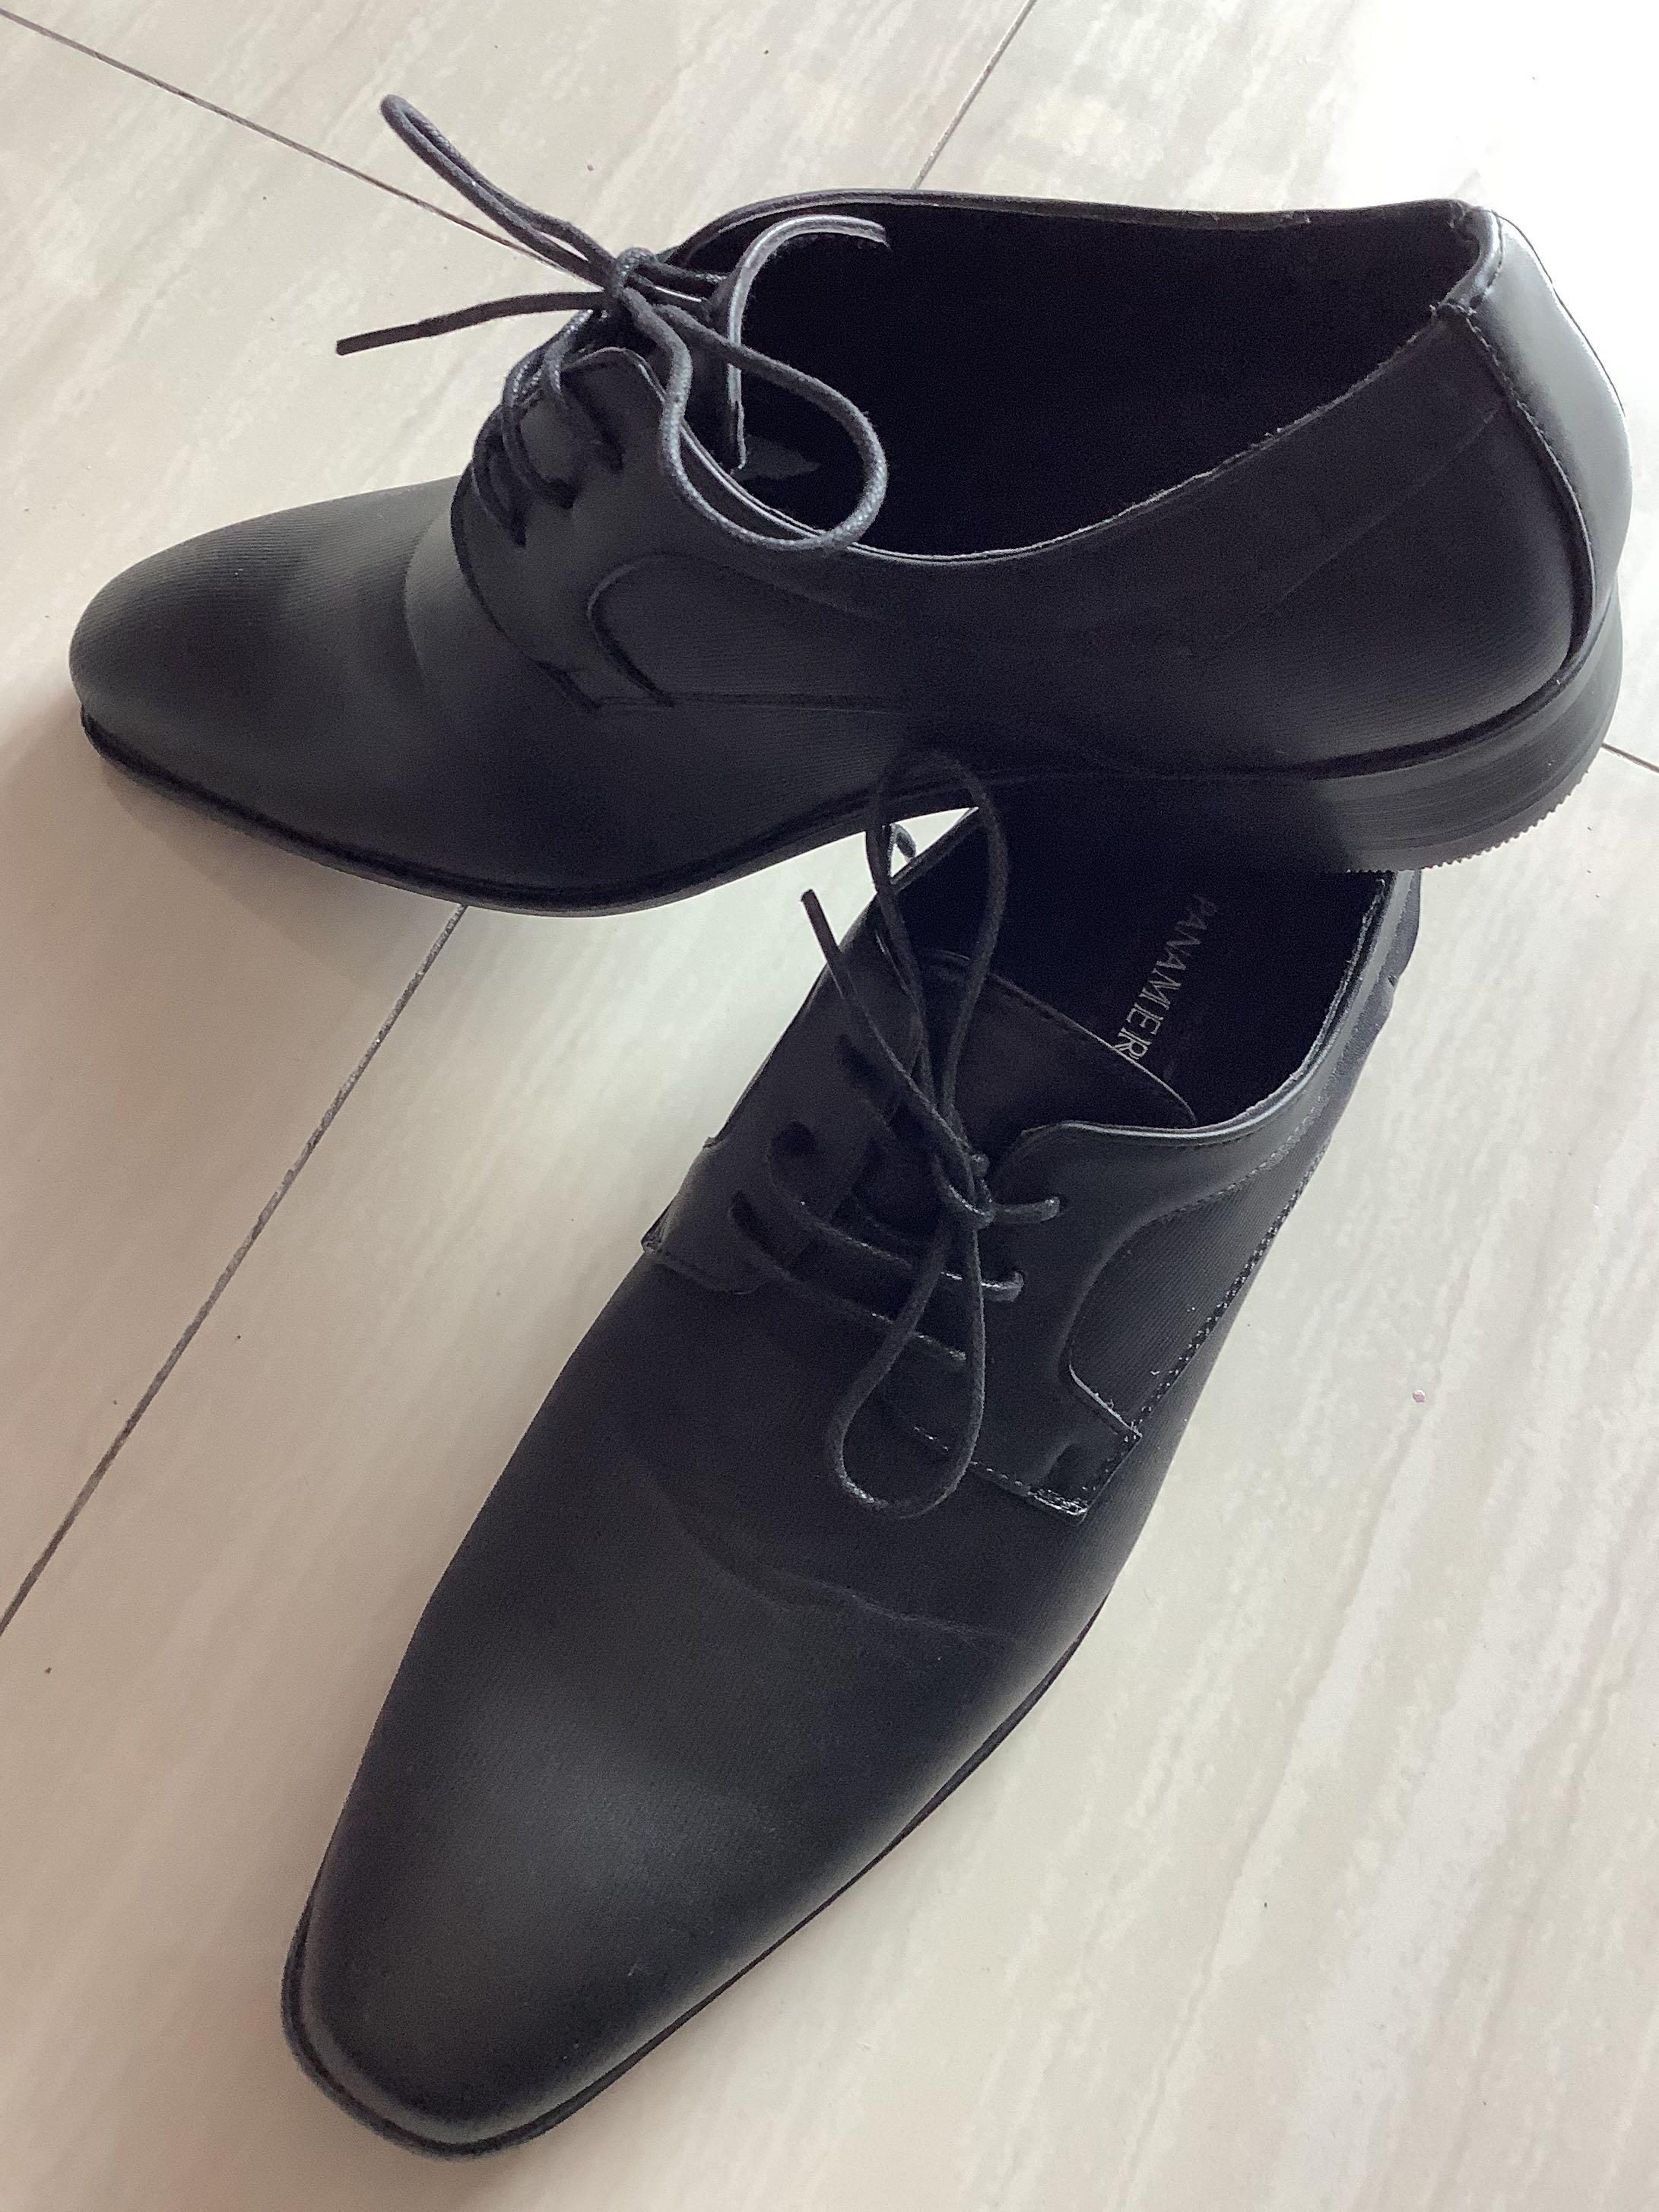 Kasut Formal Lelaki / Men Formal Shoes, Men's Fashion, Footwear, Dress ...